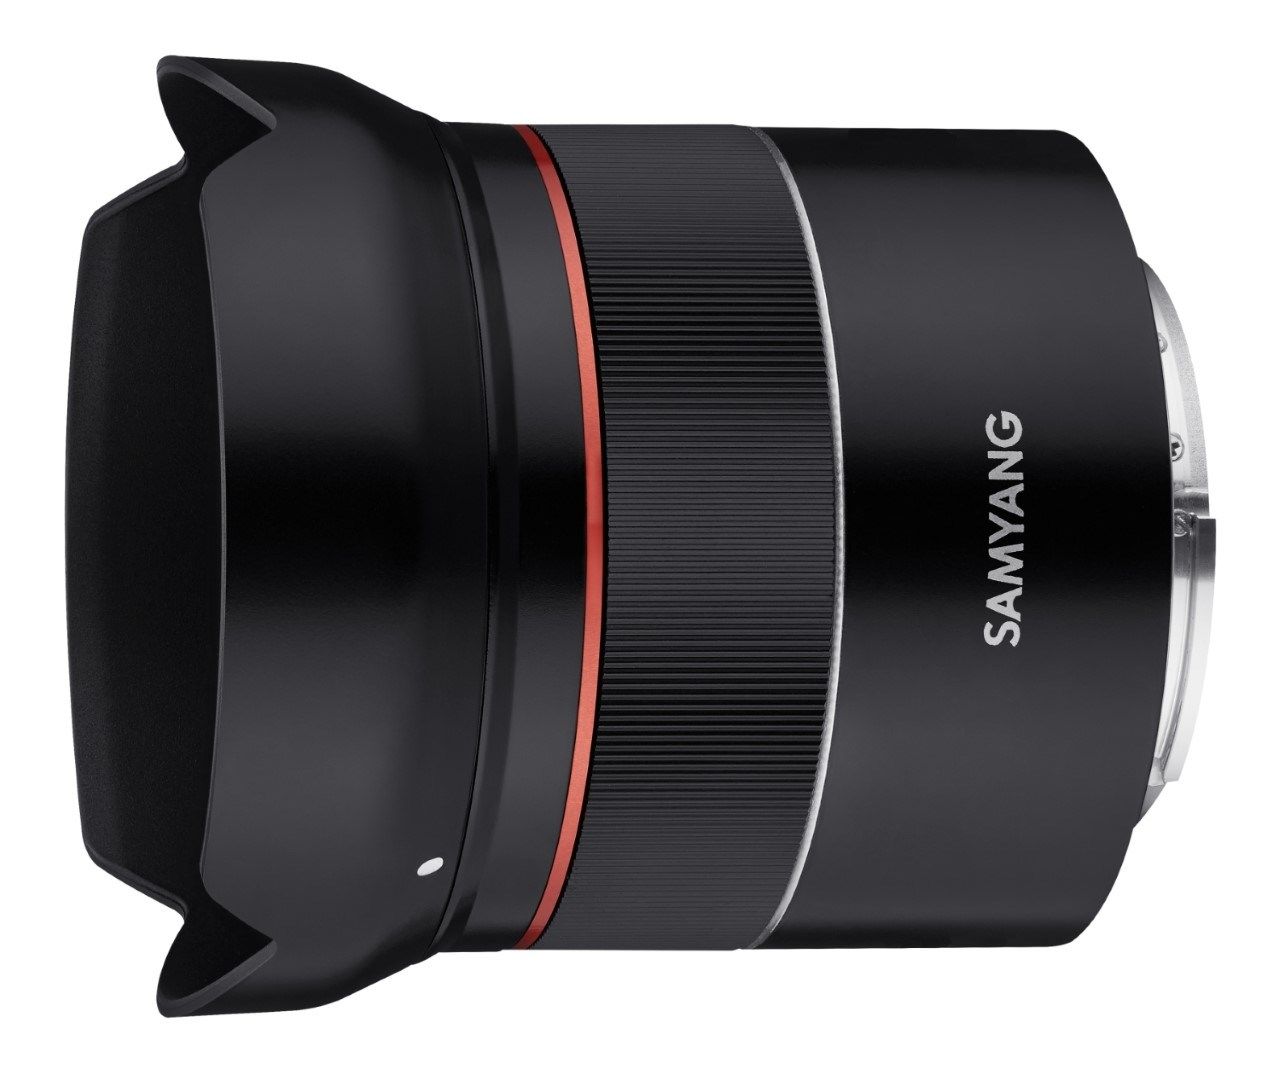 Samyang AF 18mm F2.8 Lens for Sony FE